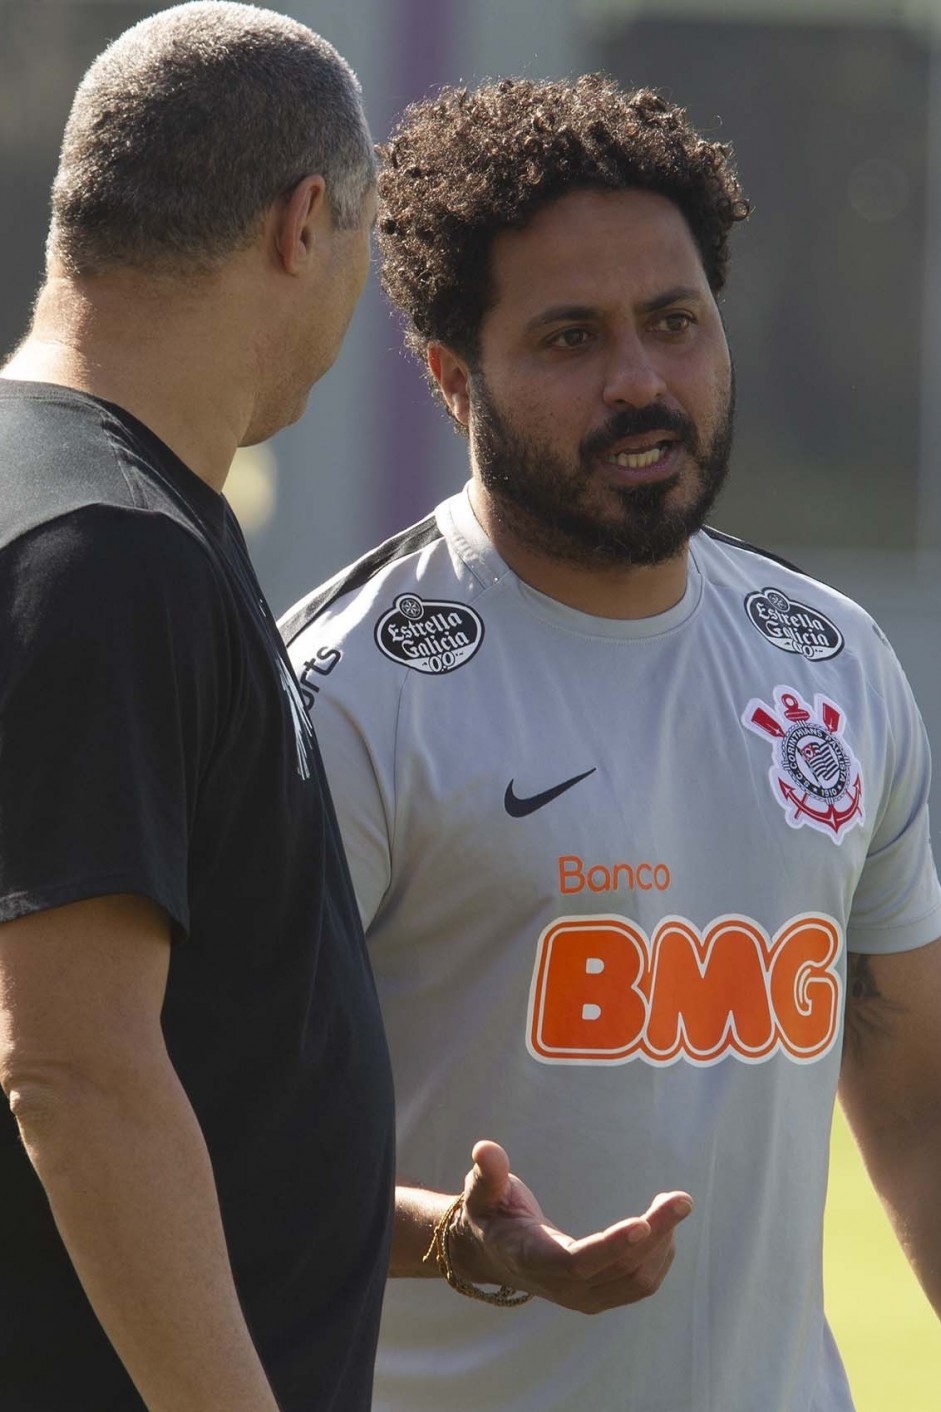 Jogadores do Corinthians treinam neste sbado